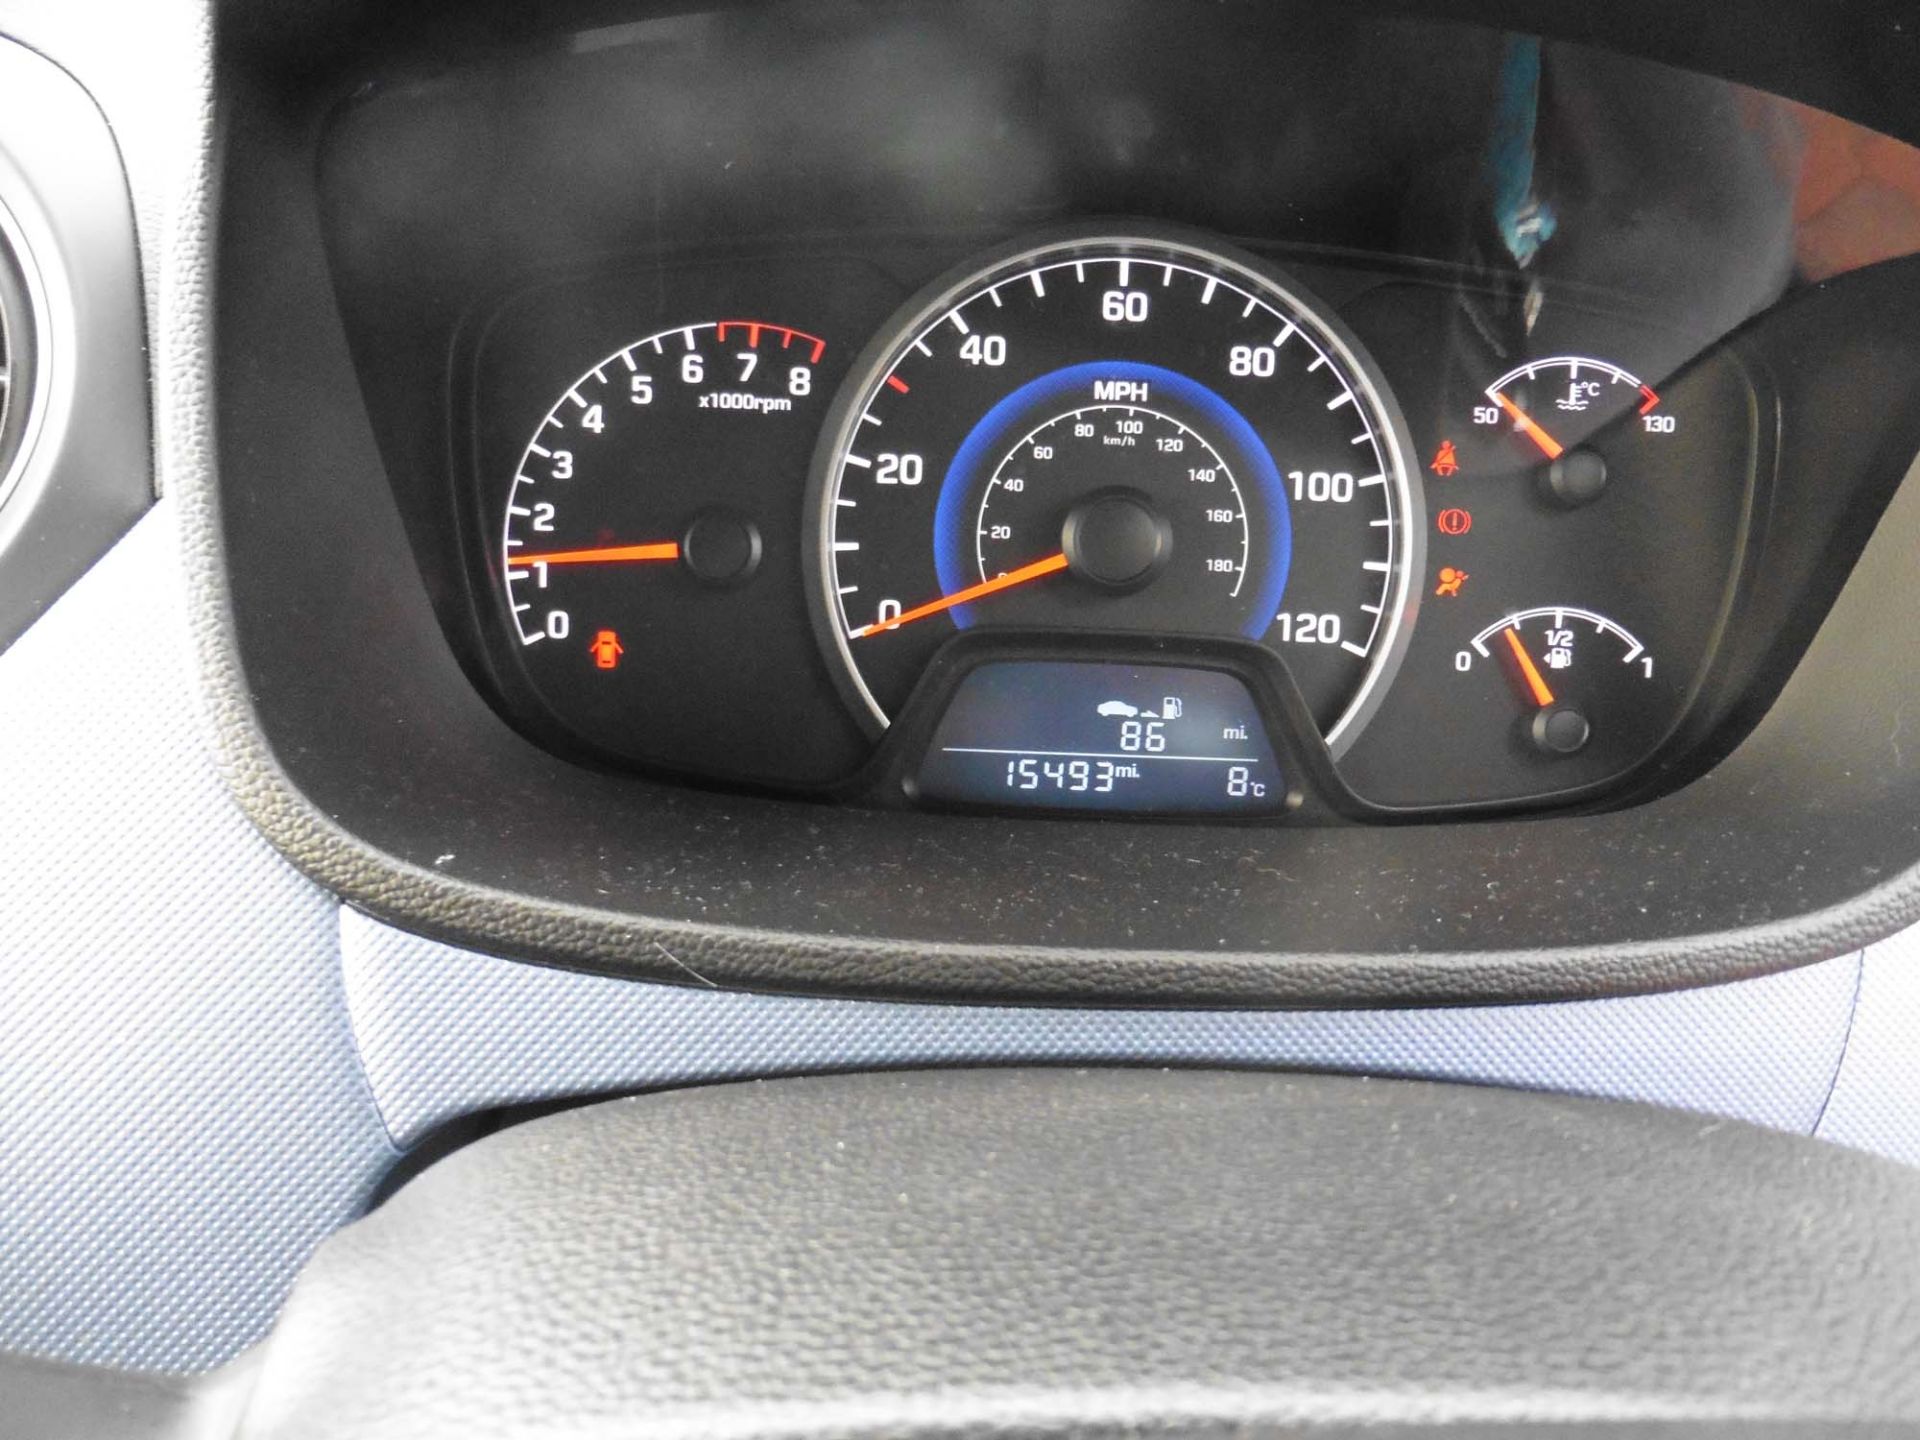 Hyundai i10 Premium 1248cc petrol hatchback Registration number: EF66 URB First Registered: 29.11. - Image 9 of 9